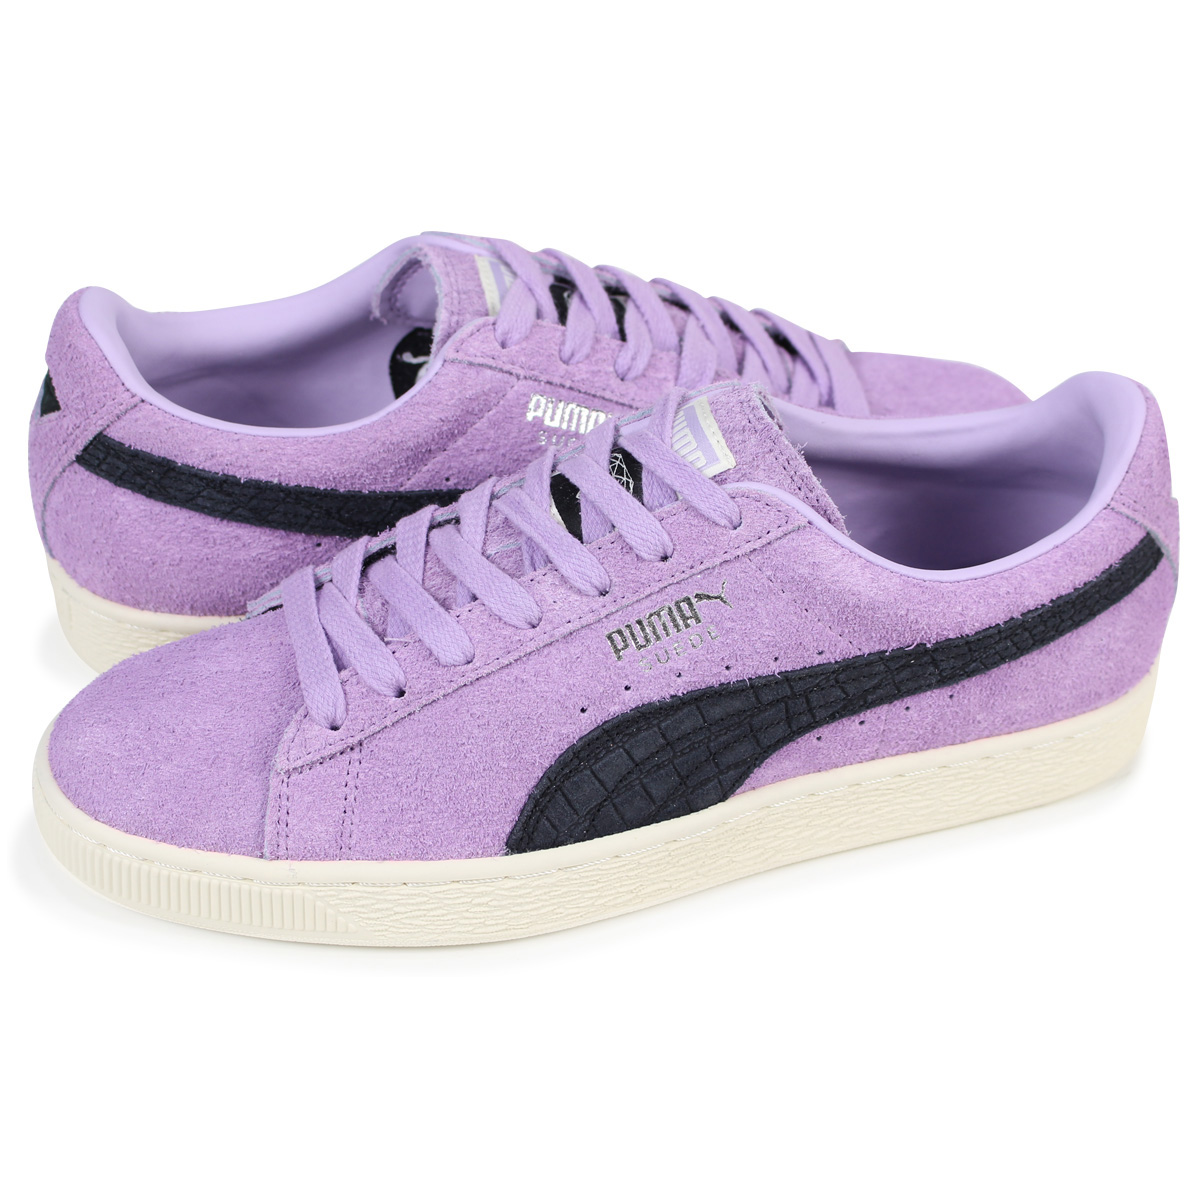 puma shoes purple men